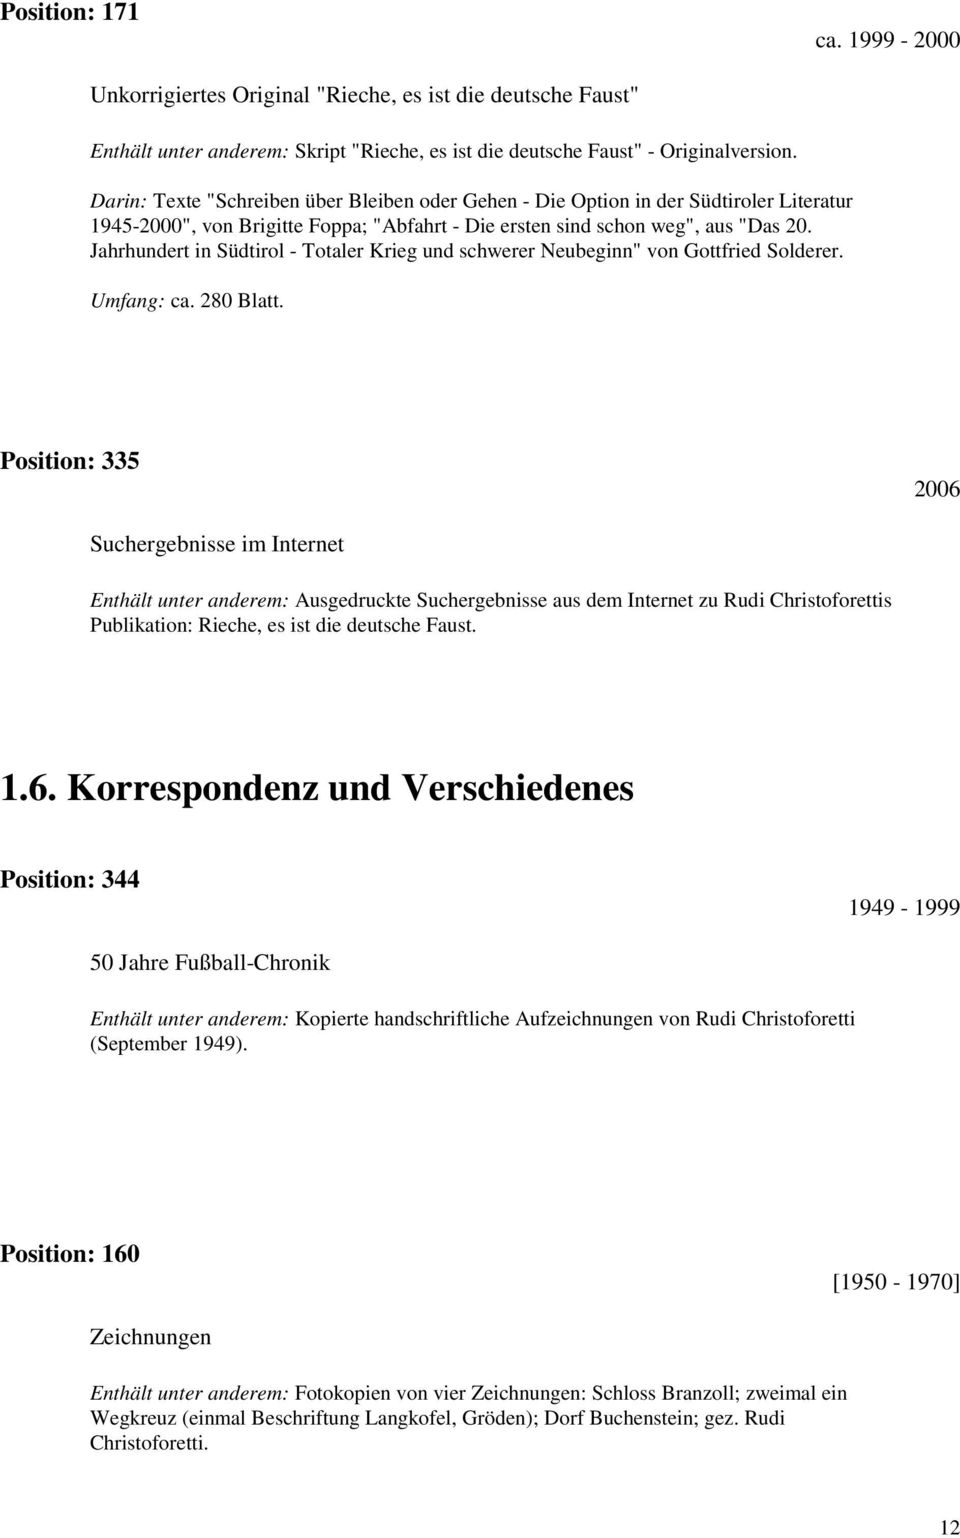 Jahrhundert in Südtirol - Totaler Krieg und schwerer Neubeginn" von Gottfried Solderer. Umfang: ca. 280 Blatt.